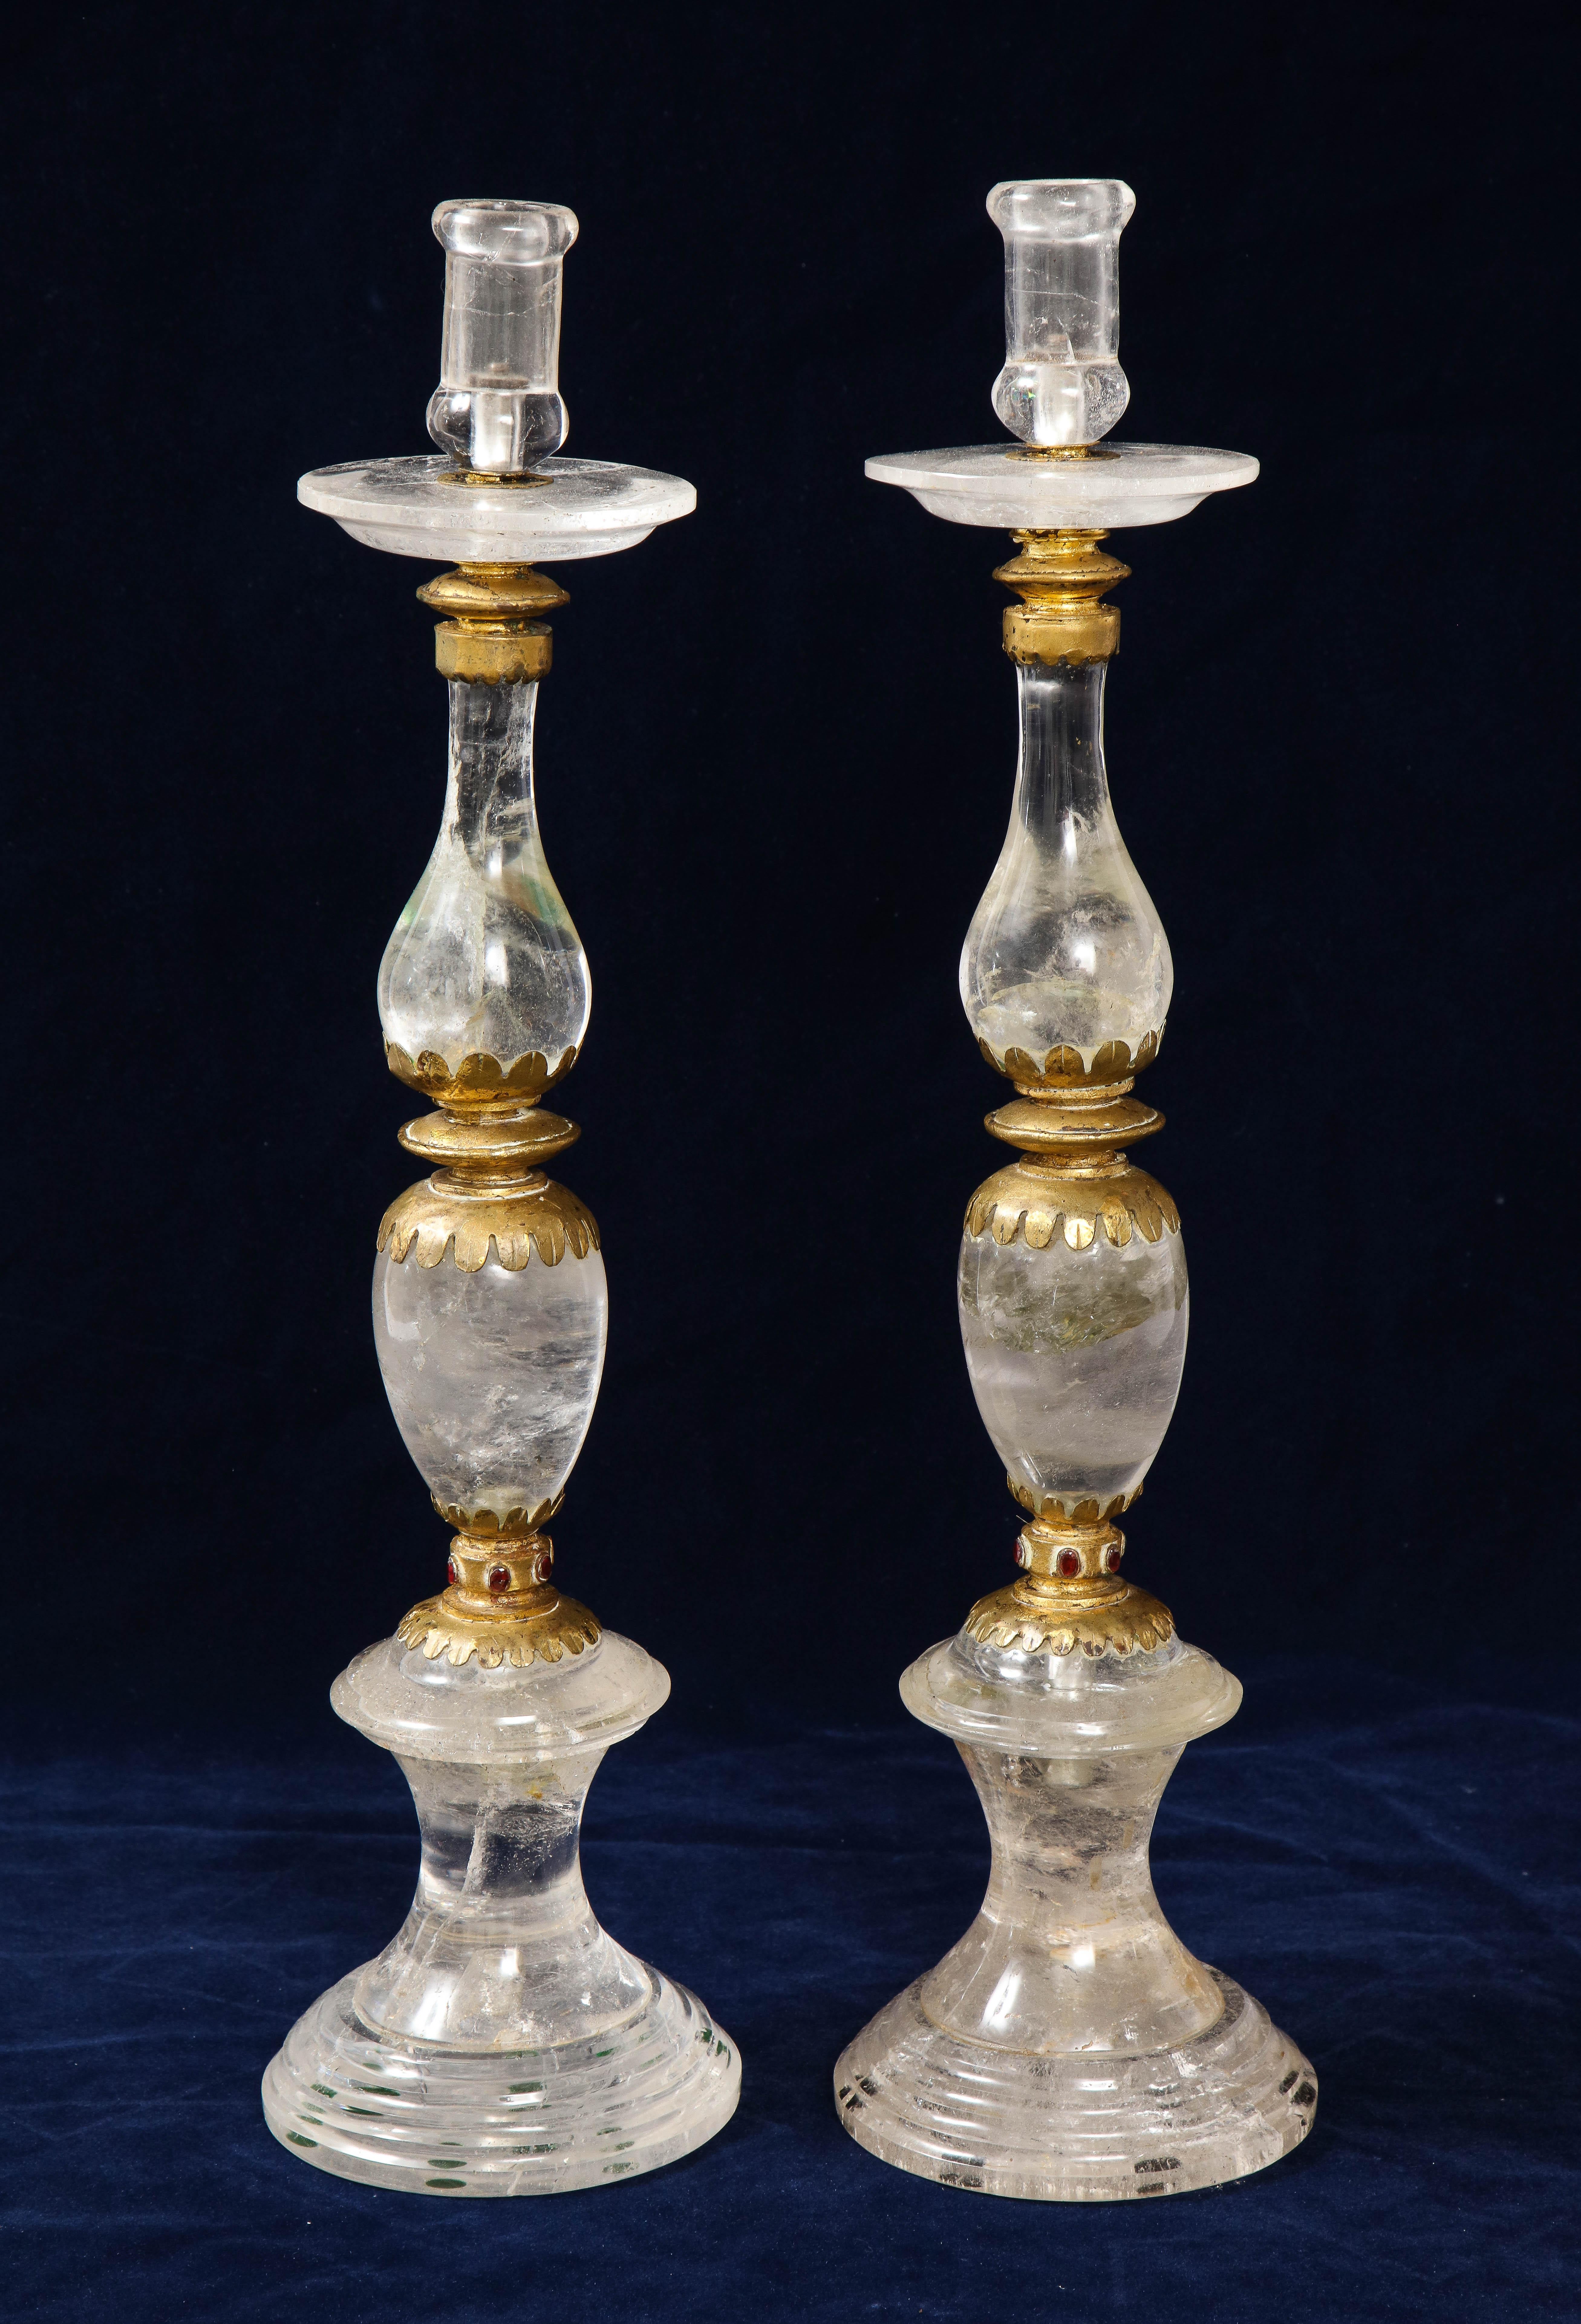 Une belle et très grande paire de chandeliers Art Déco en cristal de roche, avec des montures en bronze doré au mercure. Les éléments multiformes sont ornés de chaque côté de grenats rouges rubis de 3 carats facettés à la main et se fondent dans un